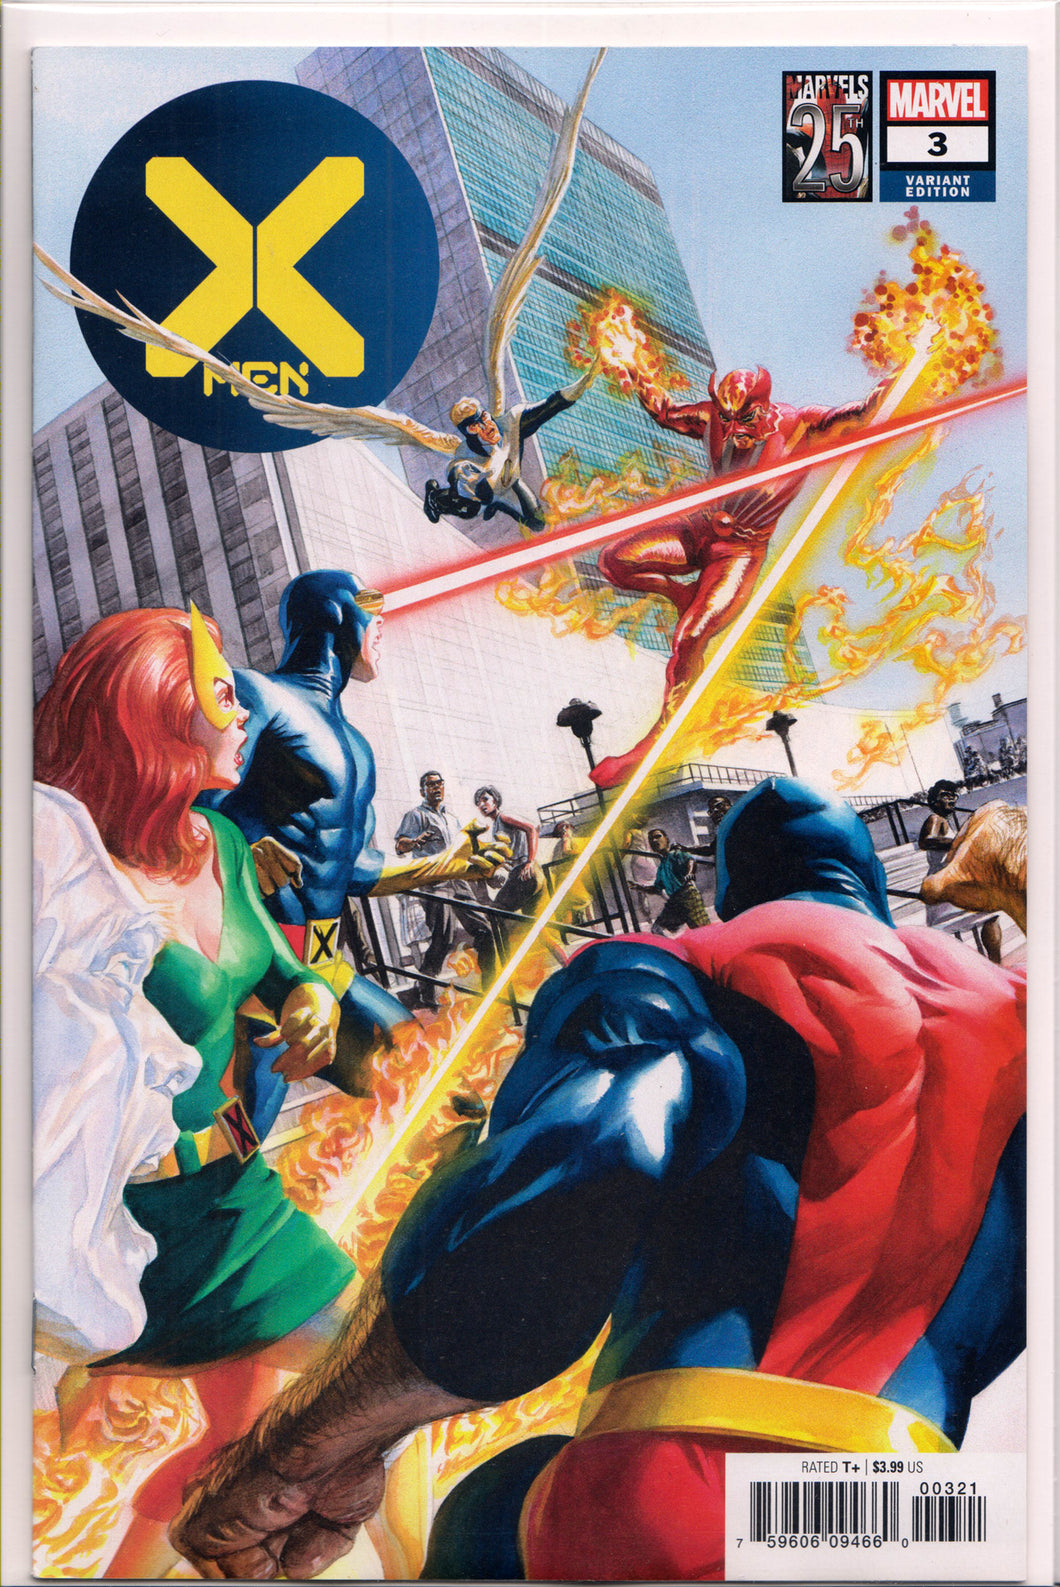 X-MEN #3 (MARVELS 25TH VARIANT) COMIC BOOK ~ Marvel Comics